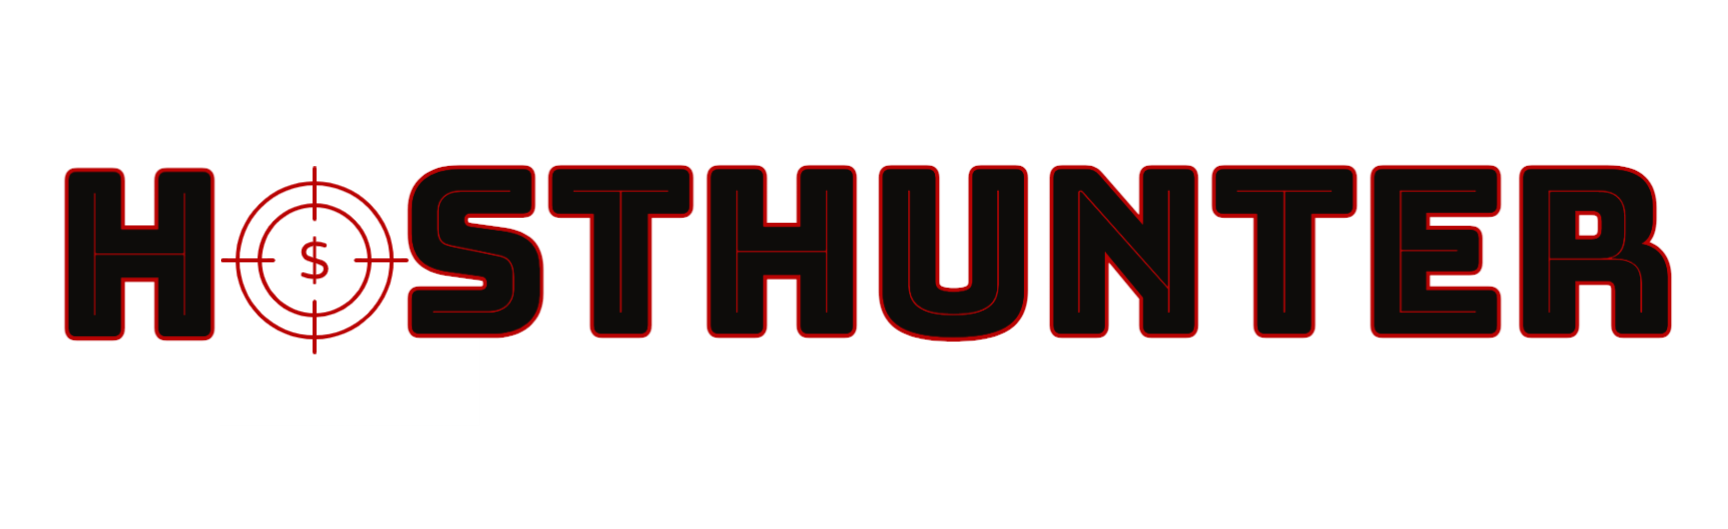 hosthunter_logo.png